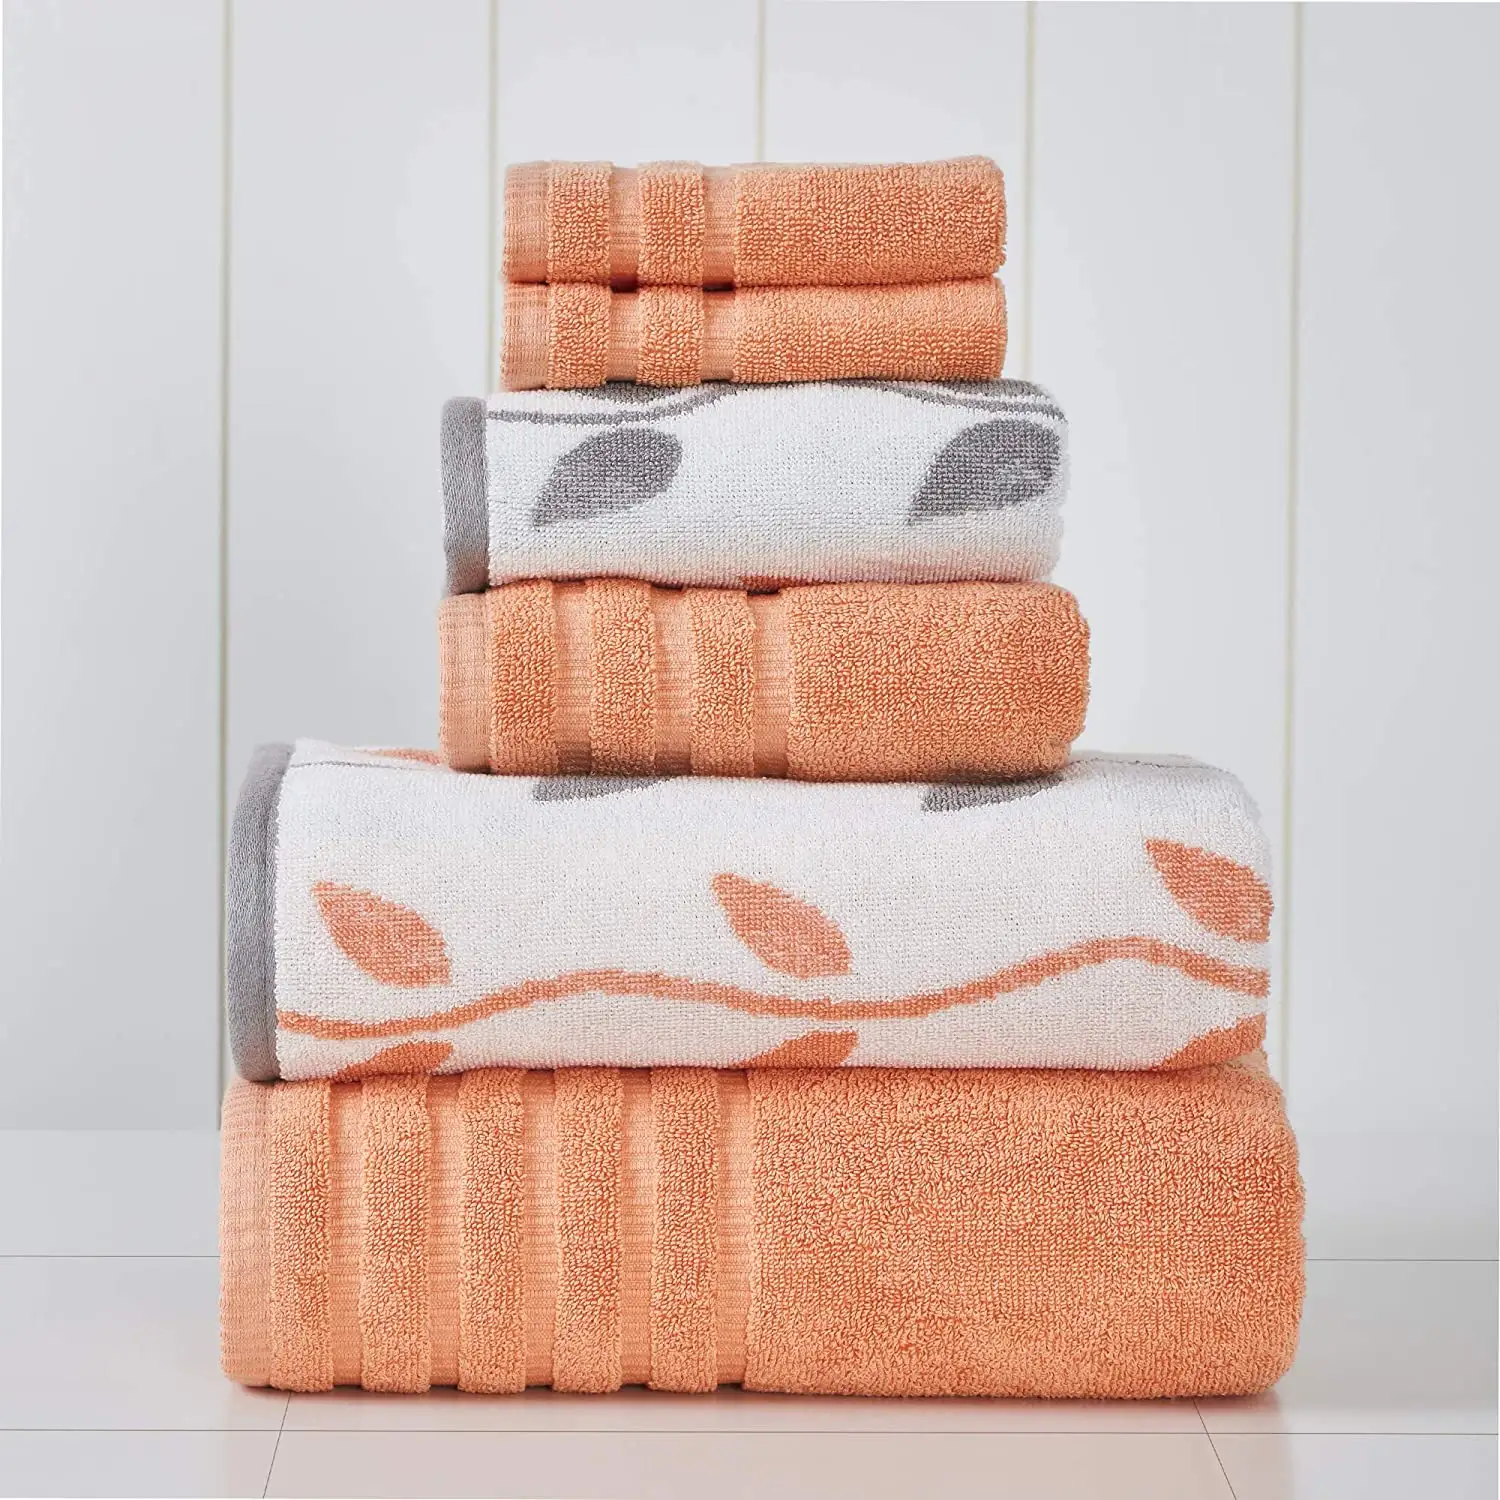 Luxus Quick Dry Baumwoll tuch Set Weiche 6-teilige Set Gesichts tücher Baumwolle Badet uch